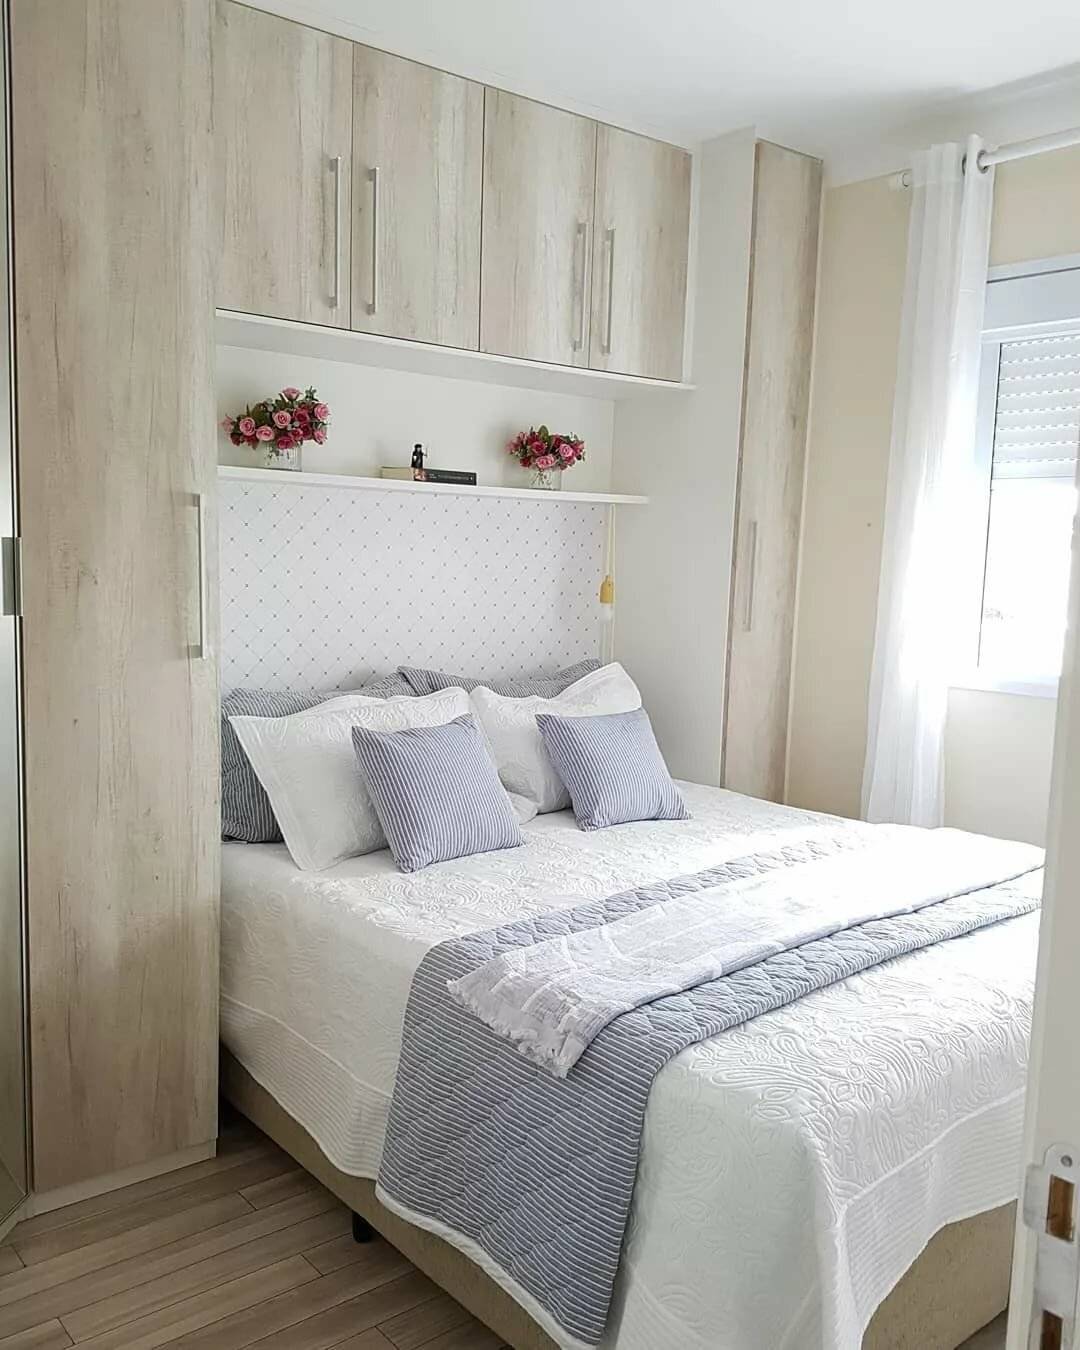 Интерьер маленькой спальни: реальные фото примеры и новинки дизайна, планировок, размещения мебели в спальне небольшого размера